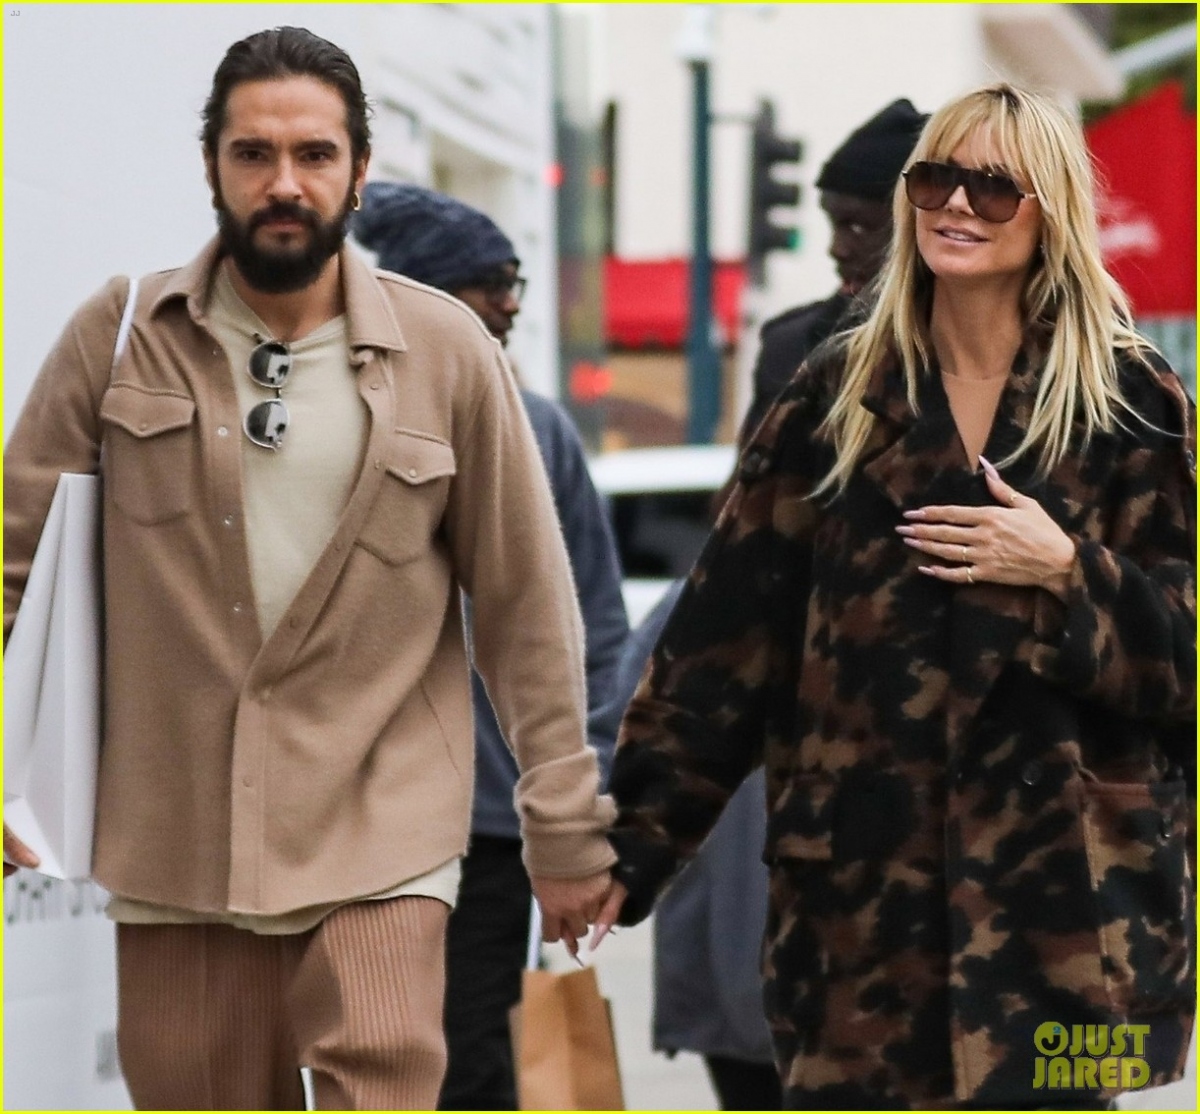 Siêu mẫu Heidi Klum diện đồ sành điệu, tình cảm nắm tay chồng trẻ đi mua sắm - Ảnh 4.